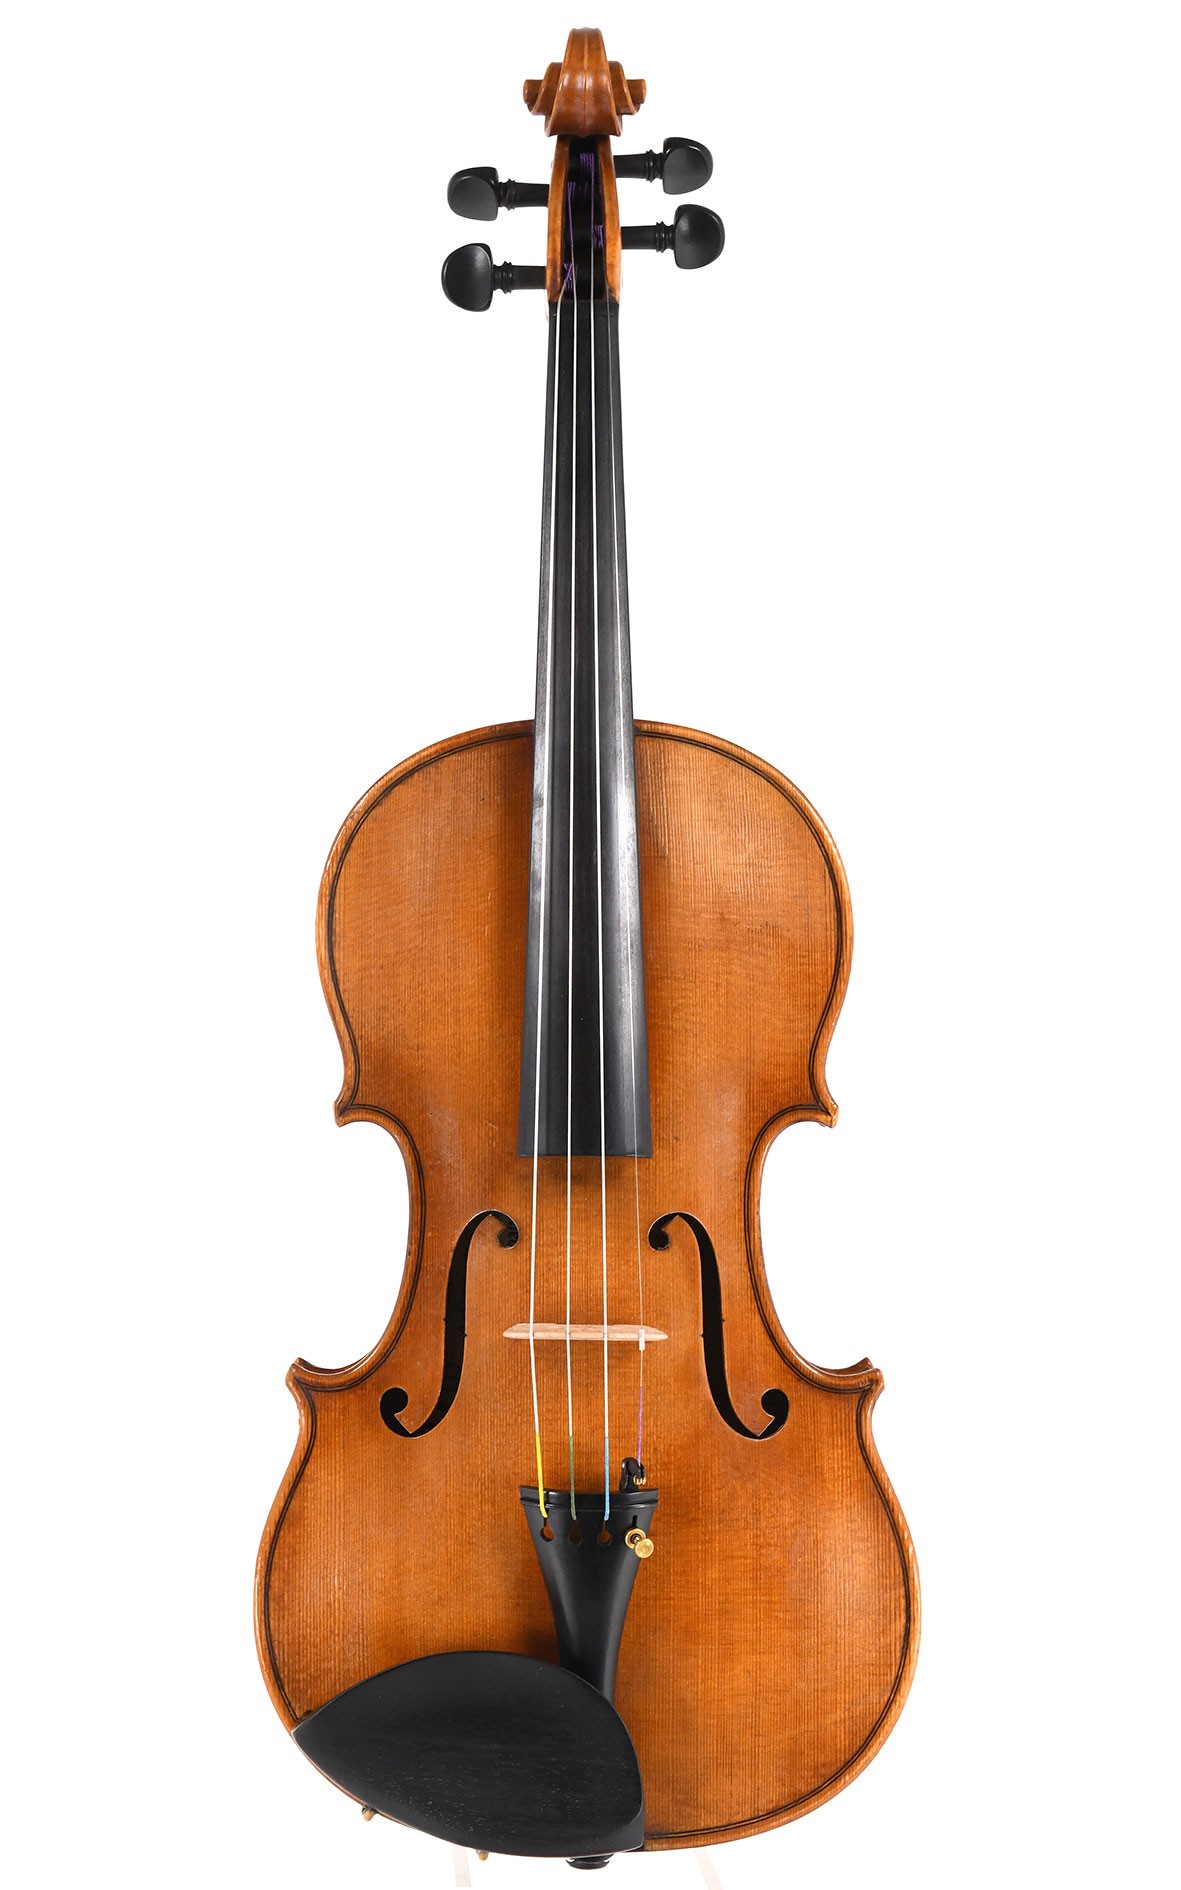 Theodor Berger master violin, Markneukirchen